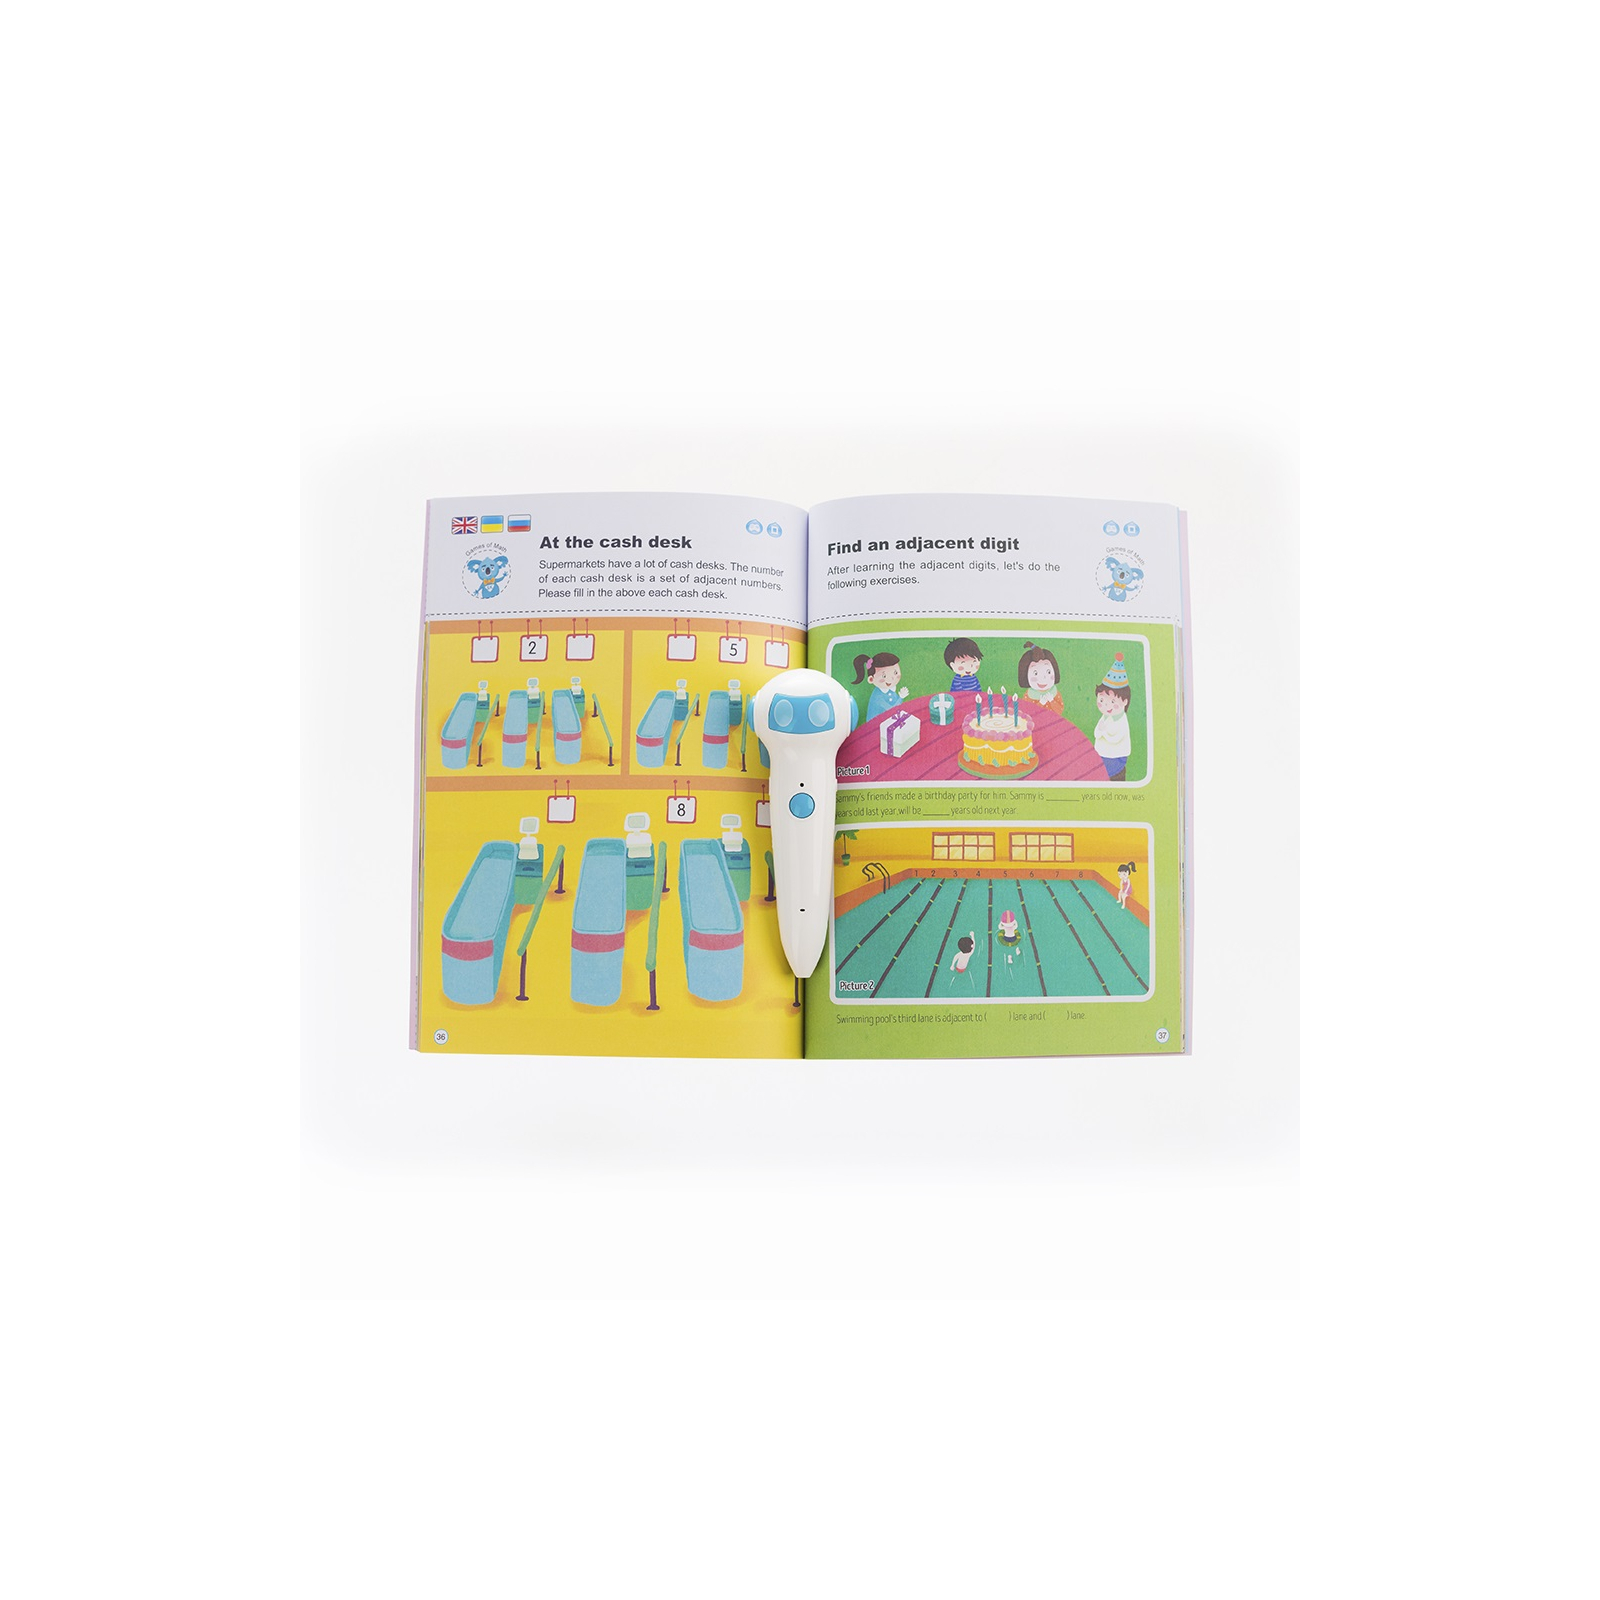 Интерактивная игрушка Smart Koala развивающая книга The Games of Math (Season 1) №1 (SKBGMS1) изображение 3